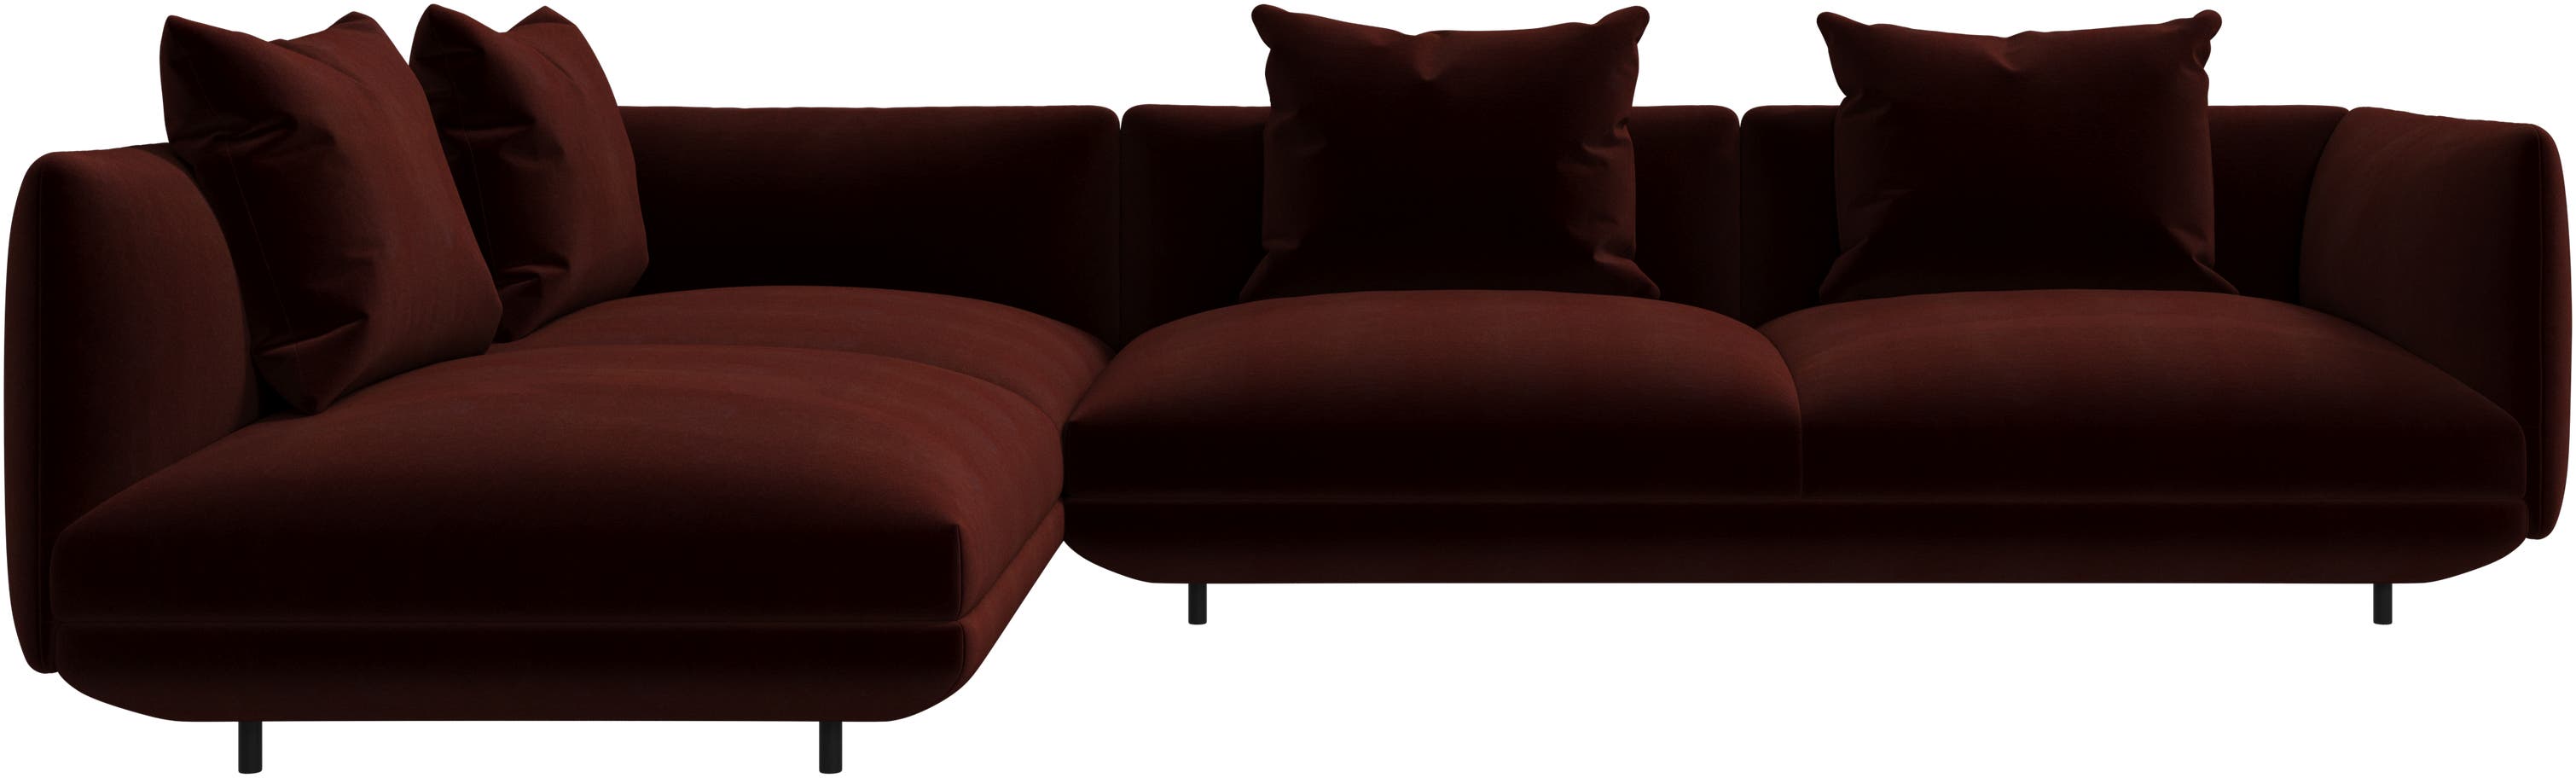 Salamanca corner sofa